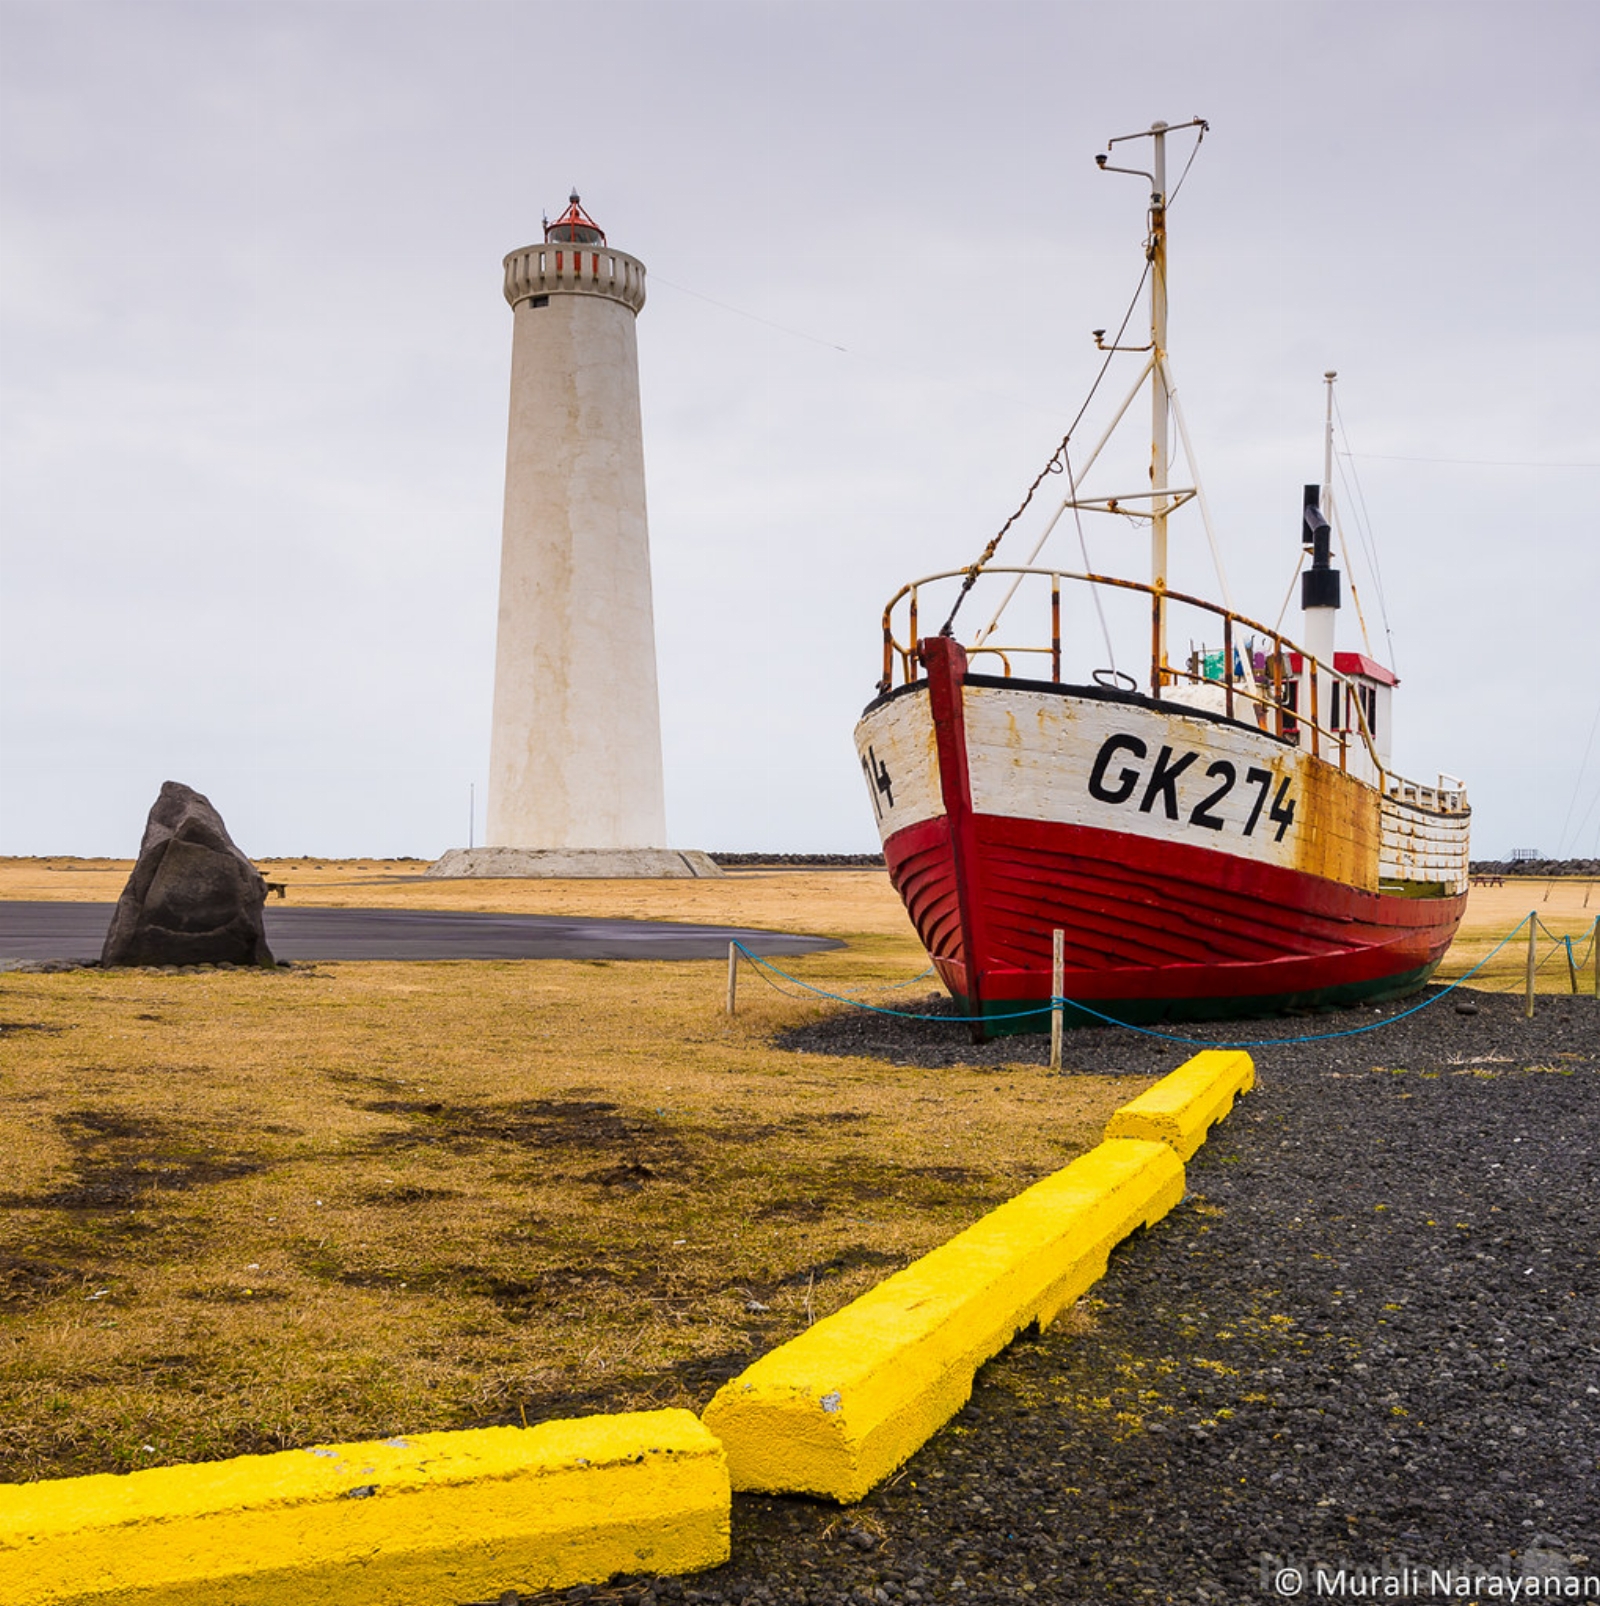 Image of Garður Lighthouse by Murali Narayanan